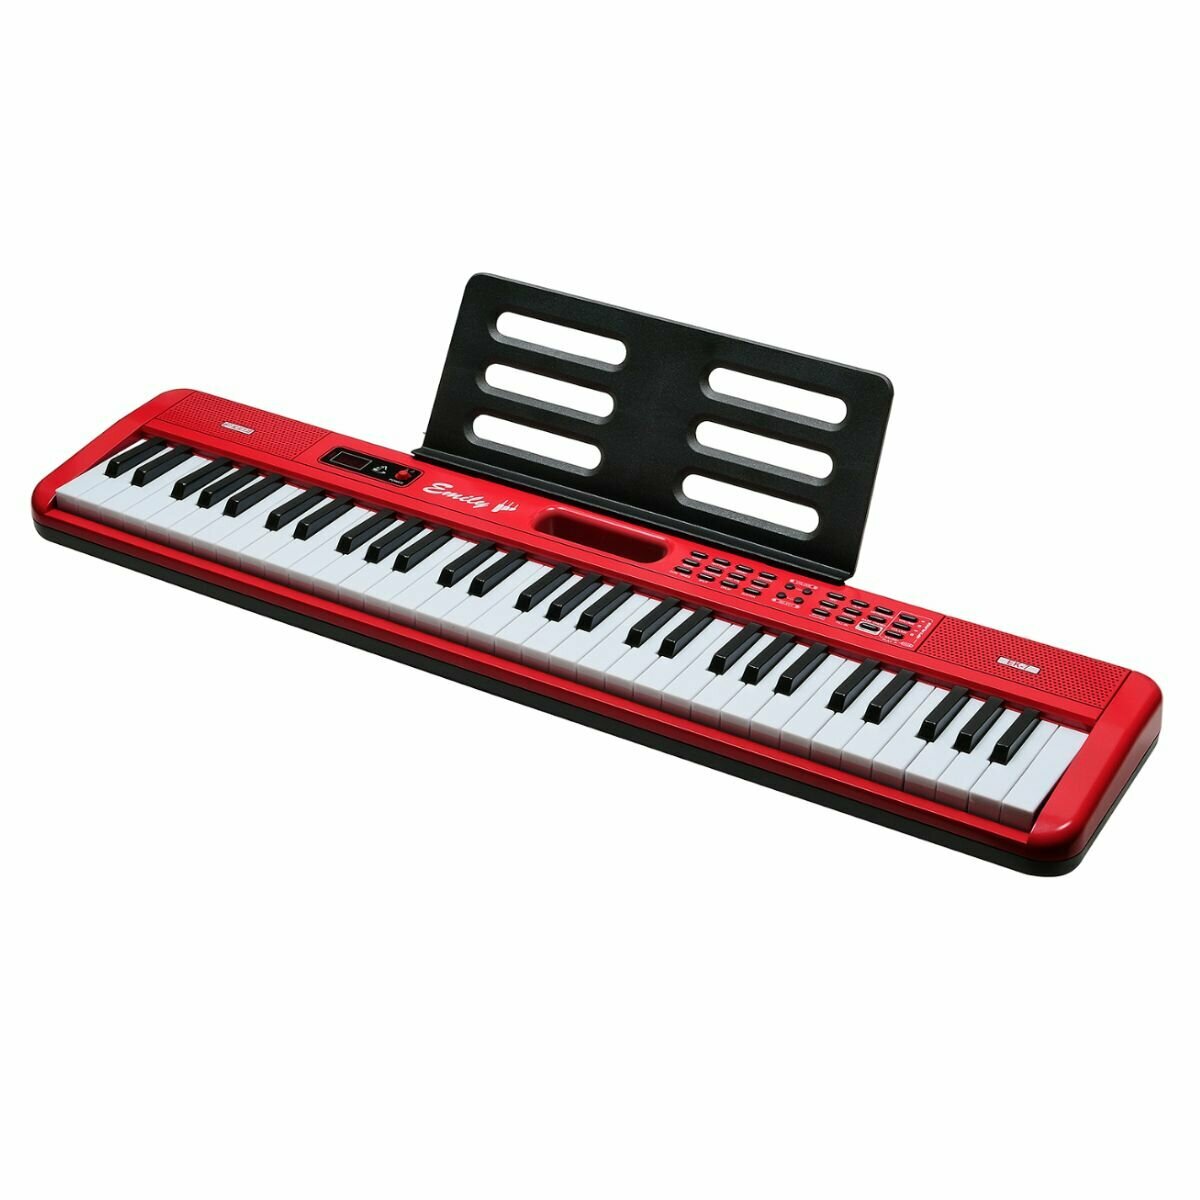 Синтезатор EMILY PIANO EK-7 RD портативный красный 61 клавиша в комплекте сетевой адаптер